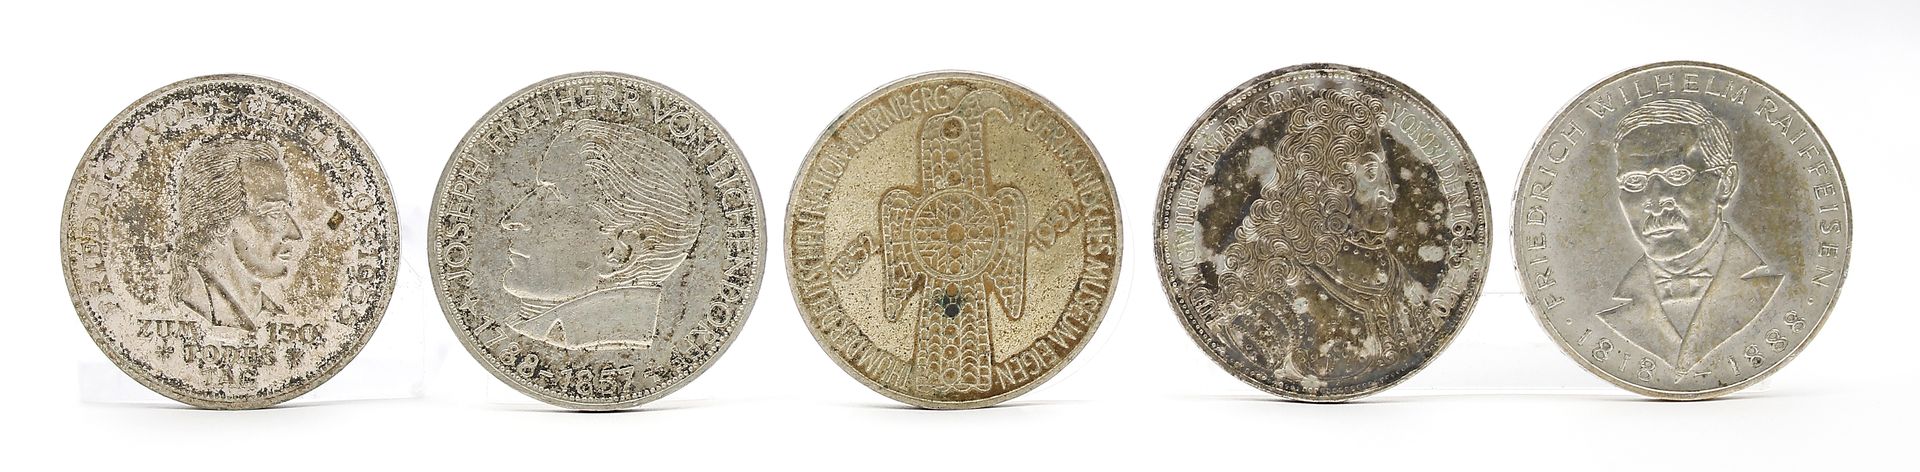 5x 5 DM Münzen.